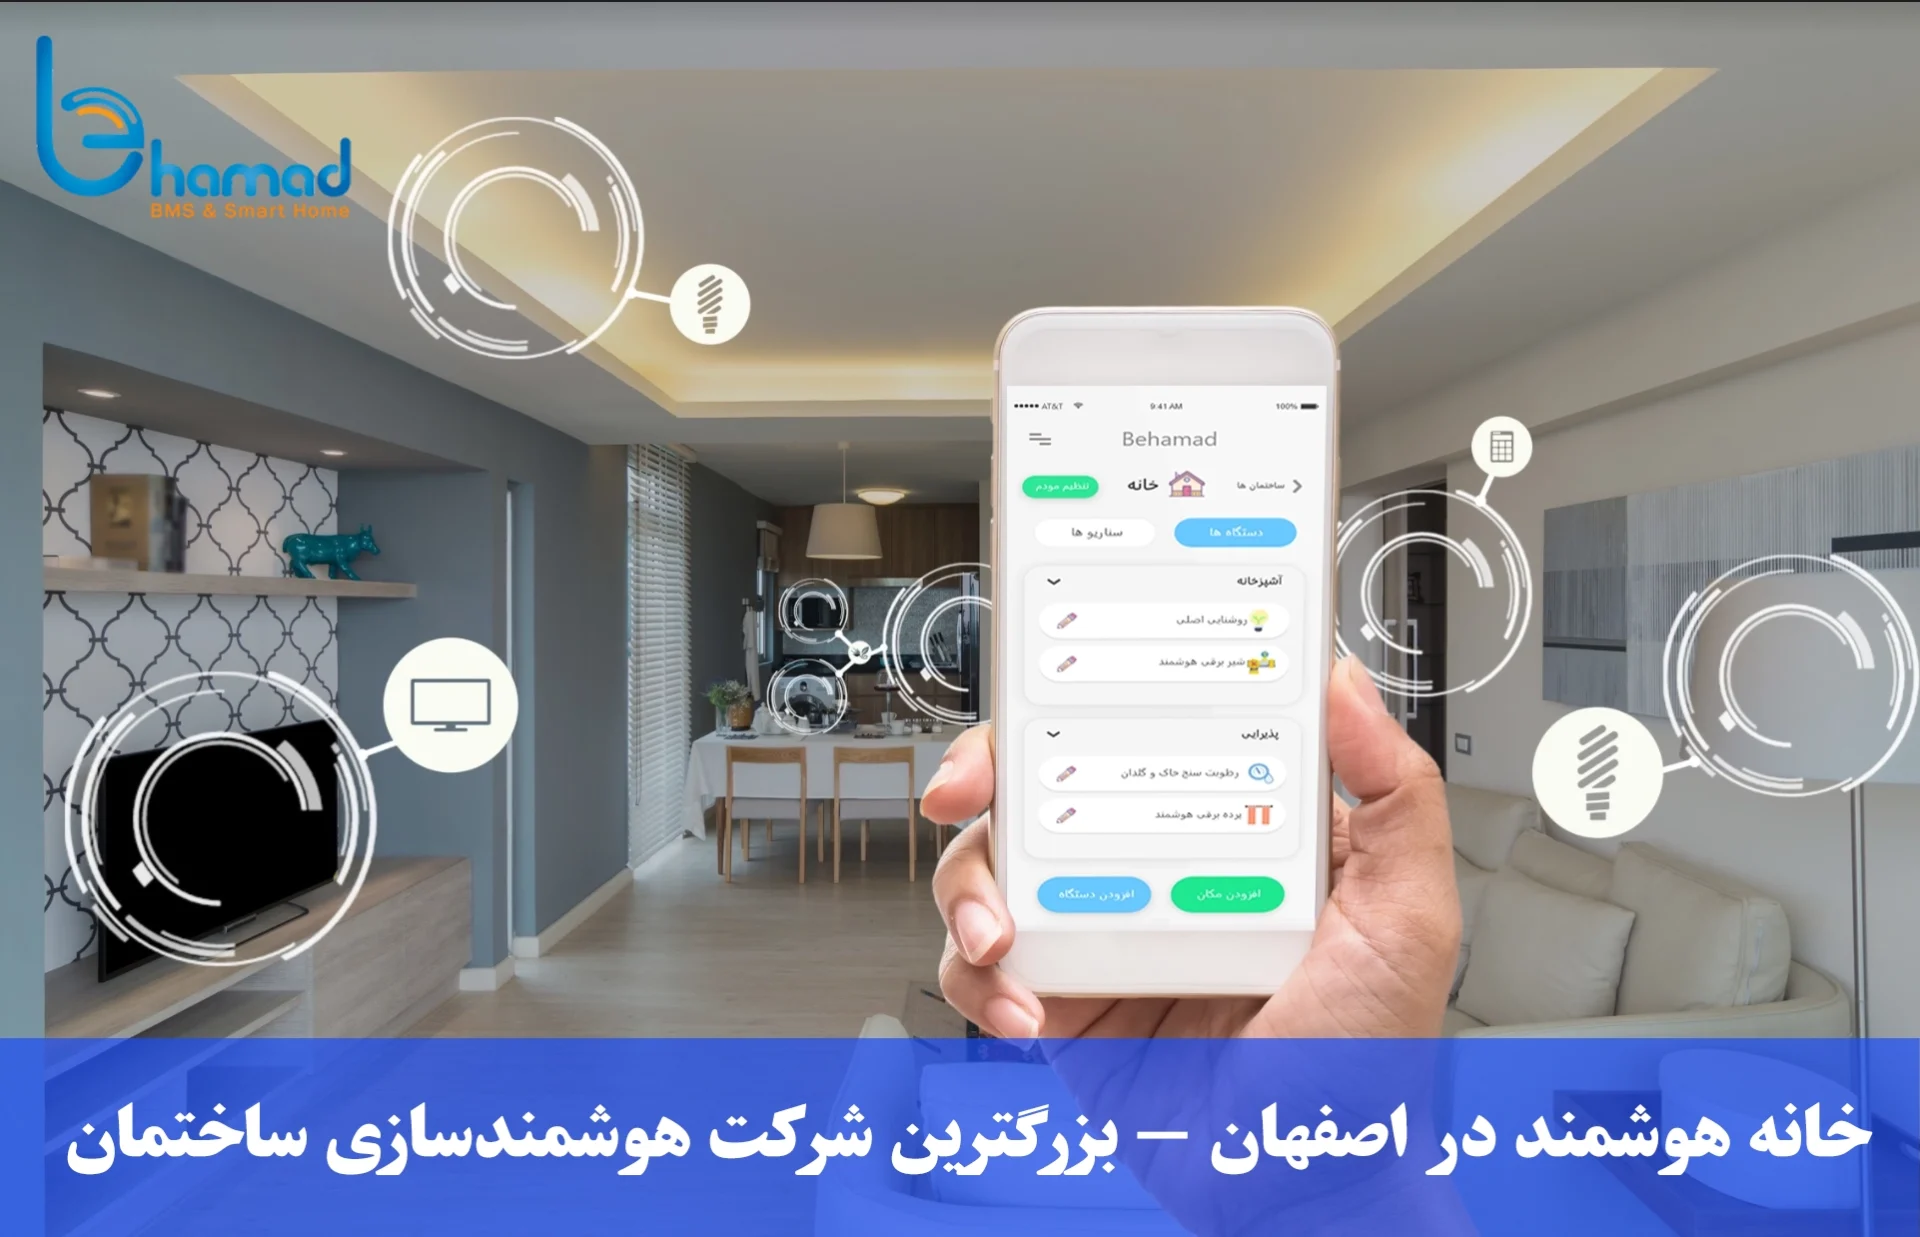 خانه هوشمند در اصفهان - بزرگترین شرکت هوشمندسازی ساختمان